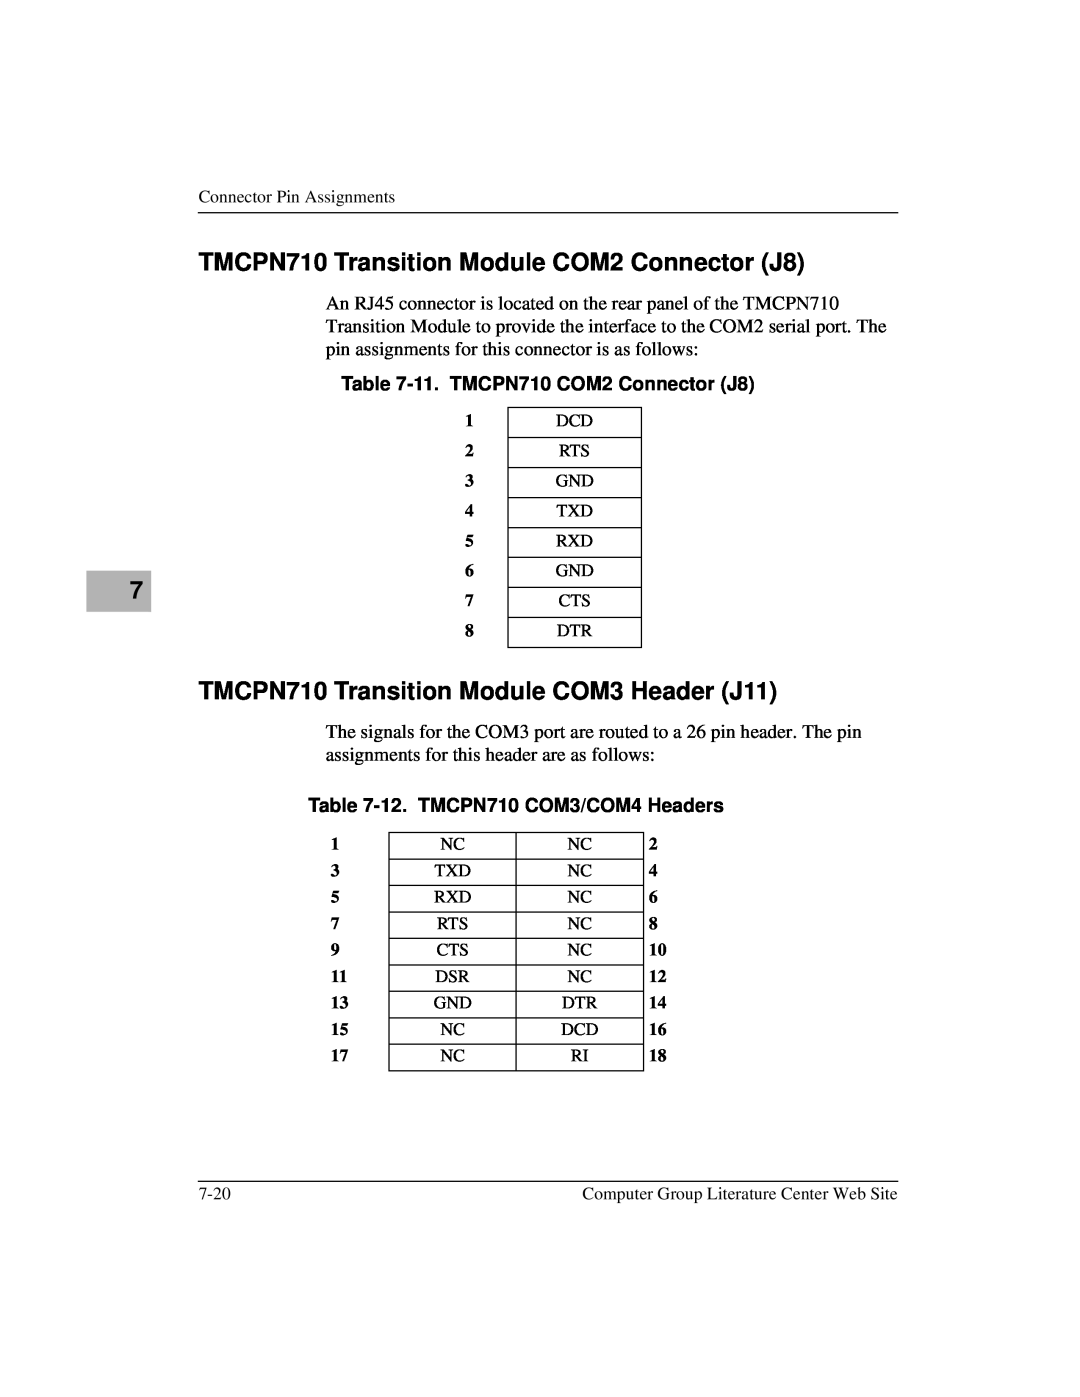 Motorola MCPN750A, IH5 manual TMCPN710 Transition Module COM2 Connector J8, TMCPN710 Transition Module COM3 Header J11 